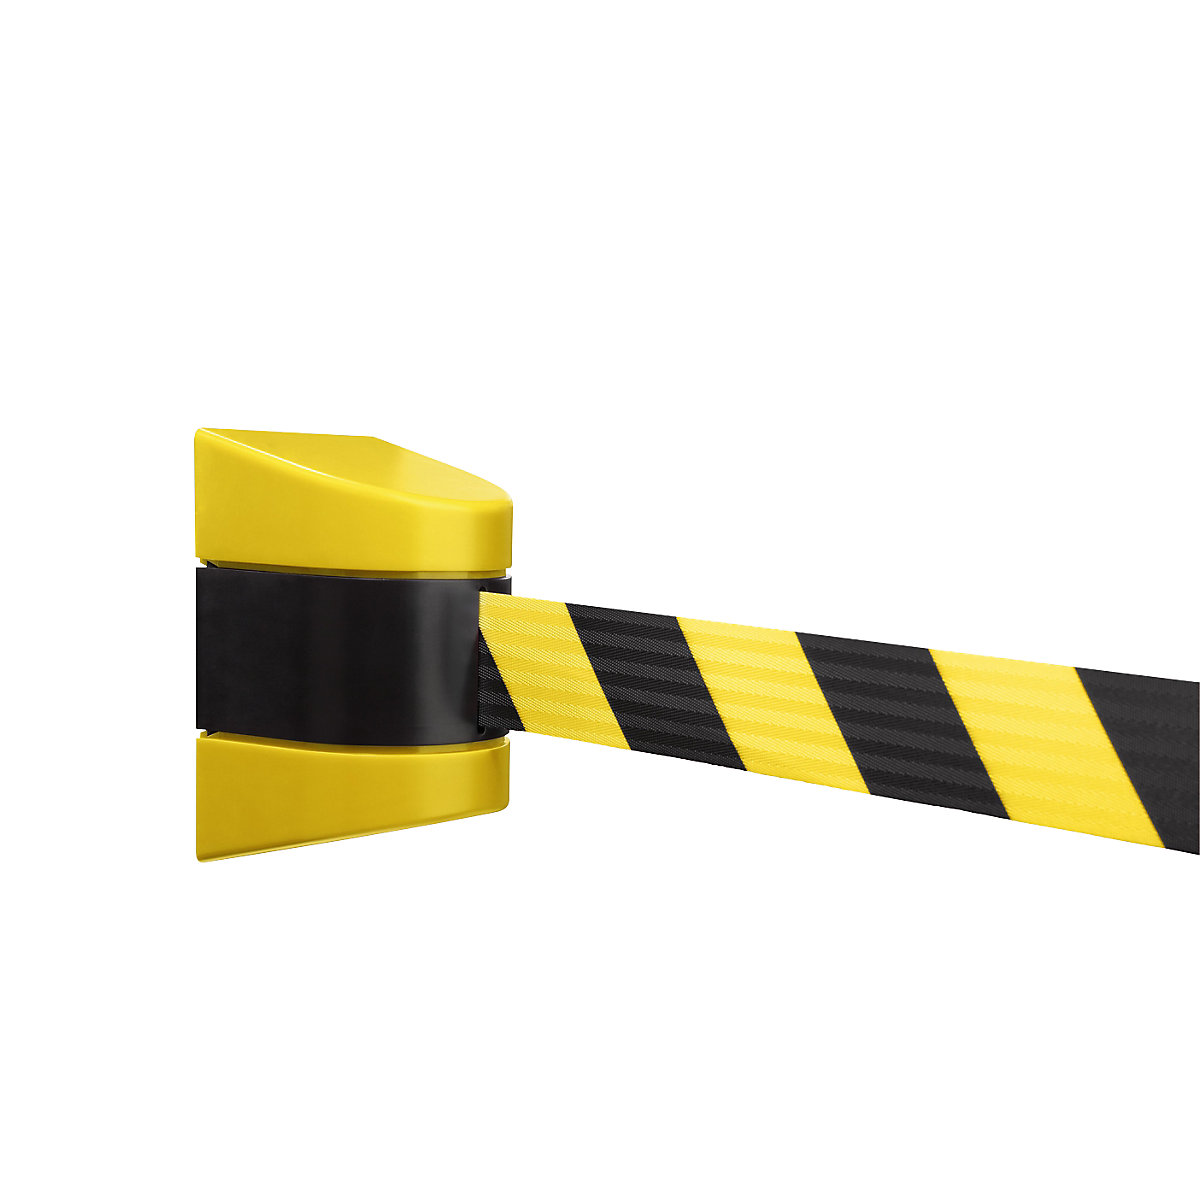 Barrera de cinta en cajetín de plástico, montaje magnético, amarillo / negro, extracción de cinta 3500 mm-7